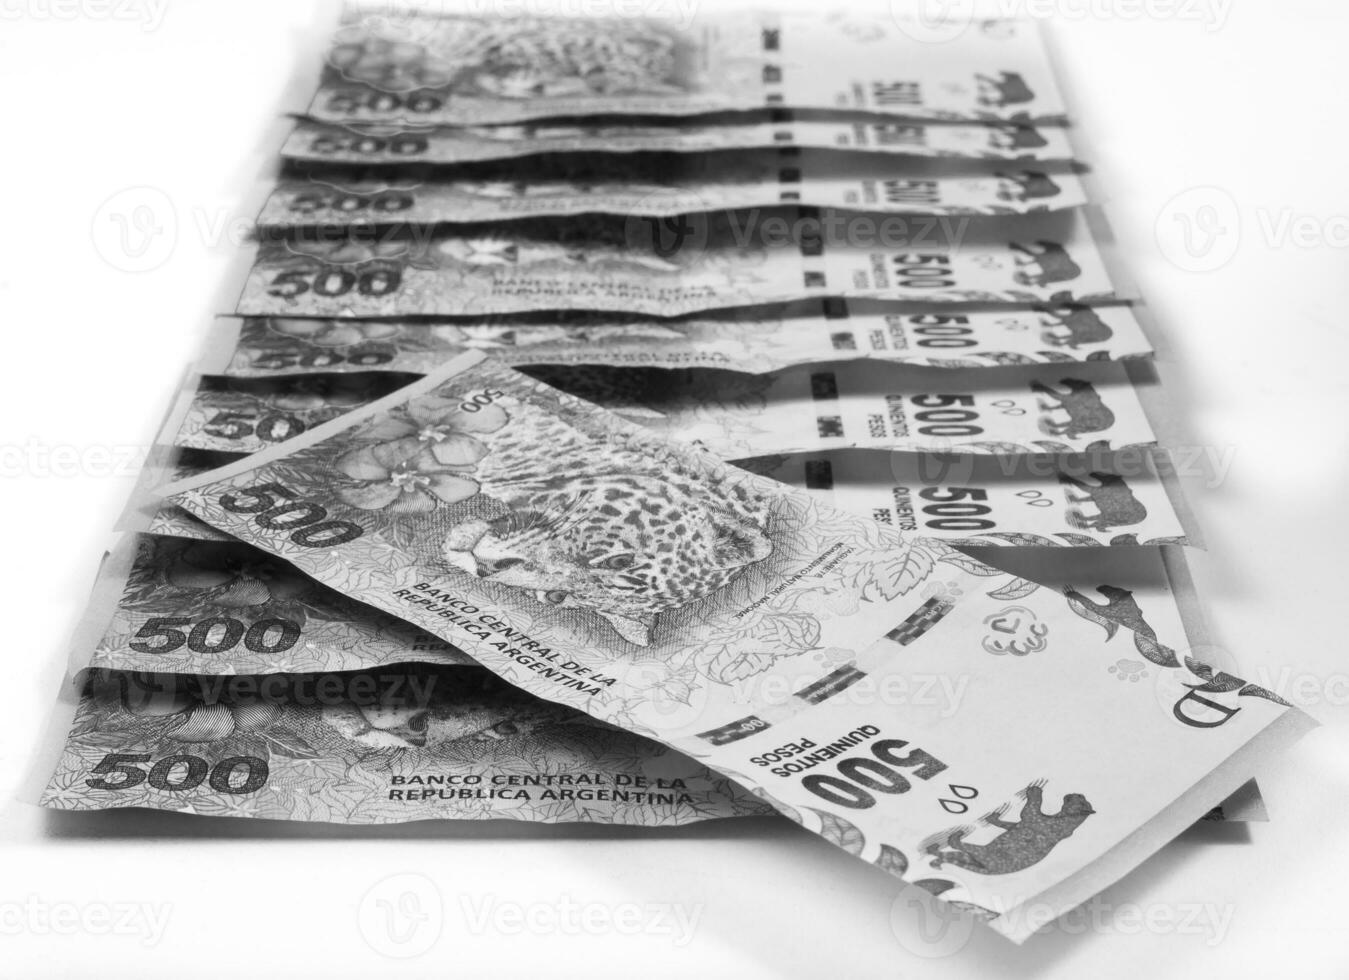 uma pilha do dinheiro é mostrando dentro Preto e branco foto